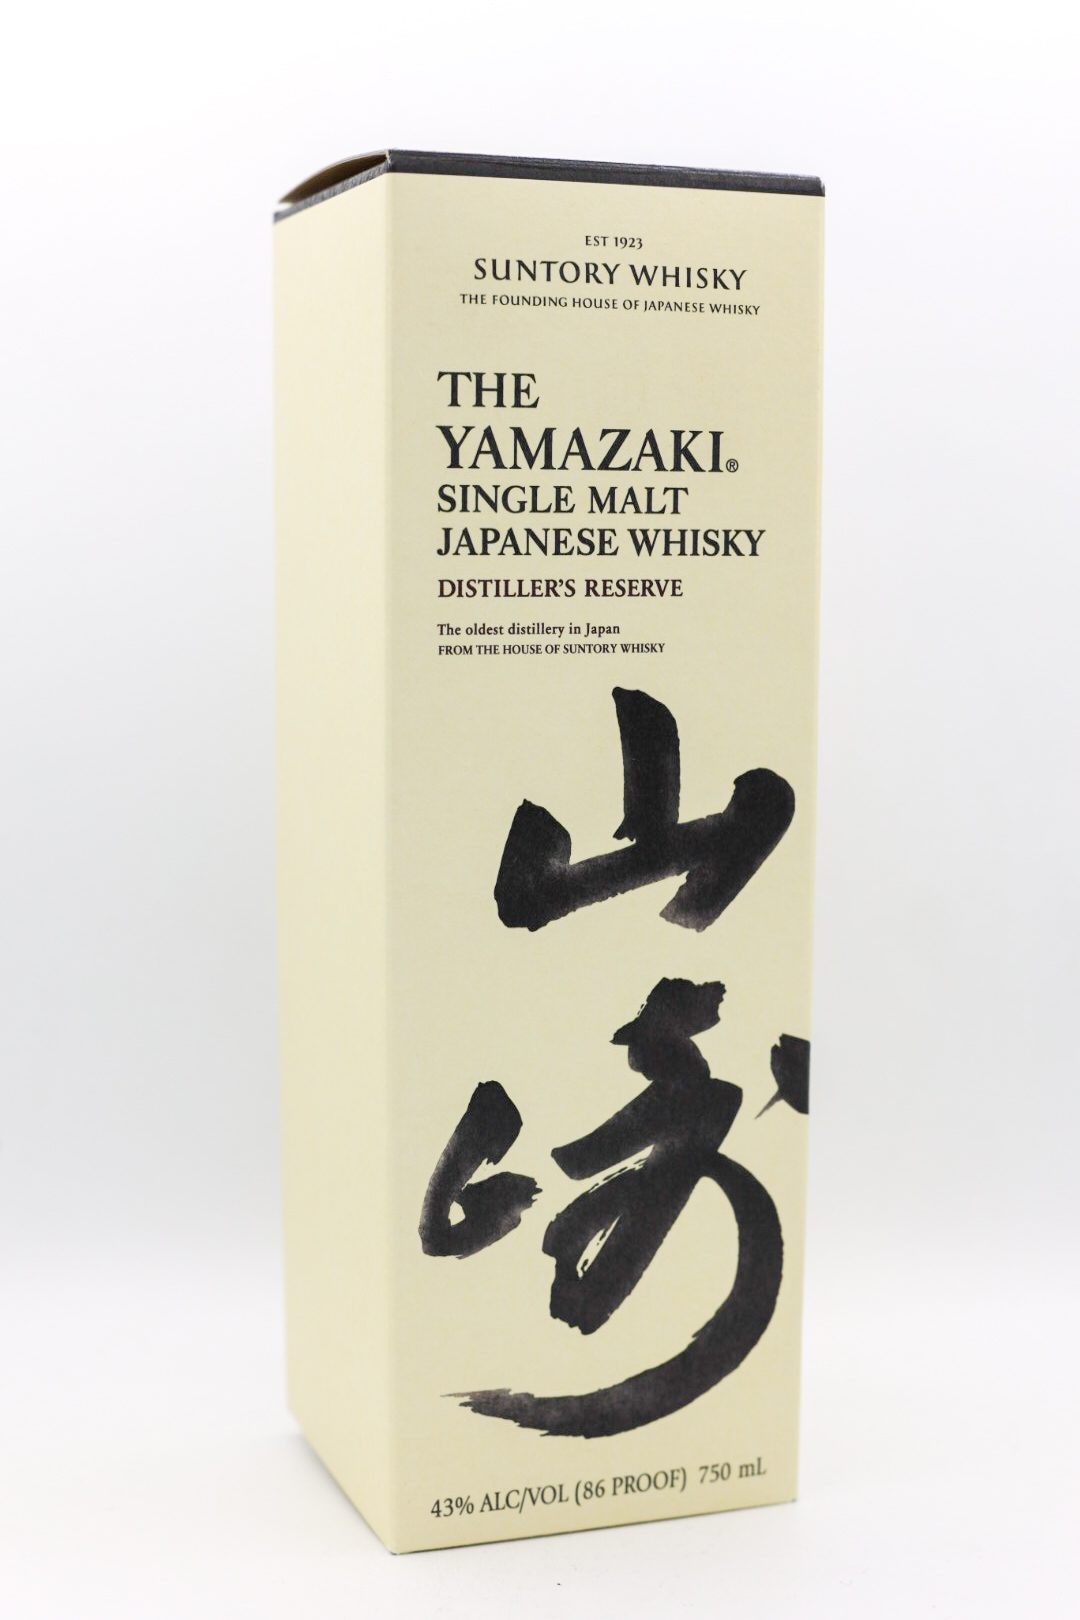 The Yamazaki Distiller's Reserve Single Malt